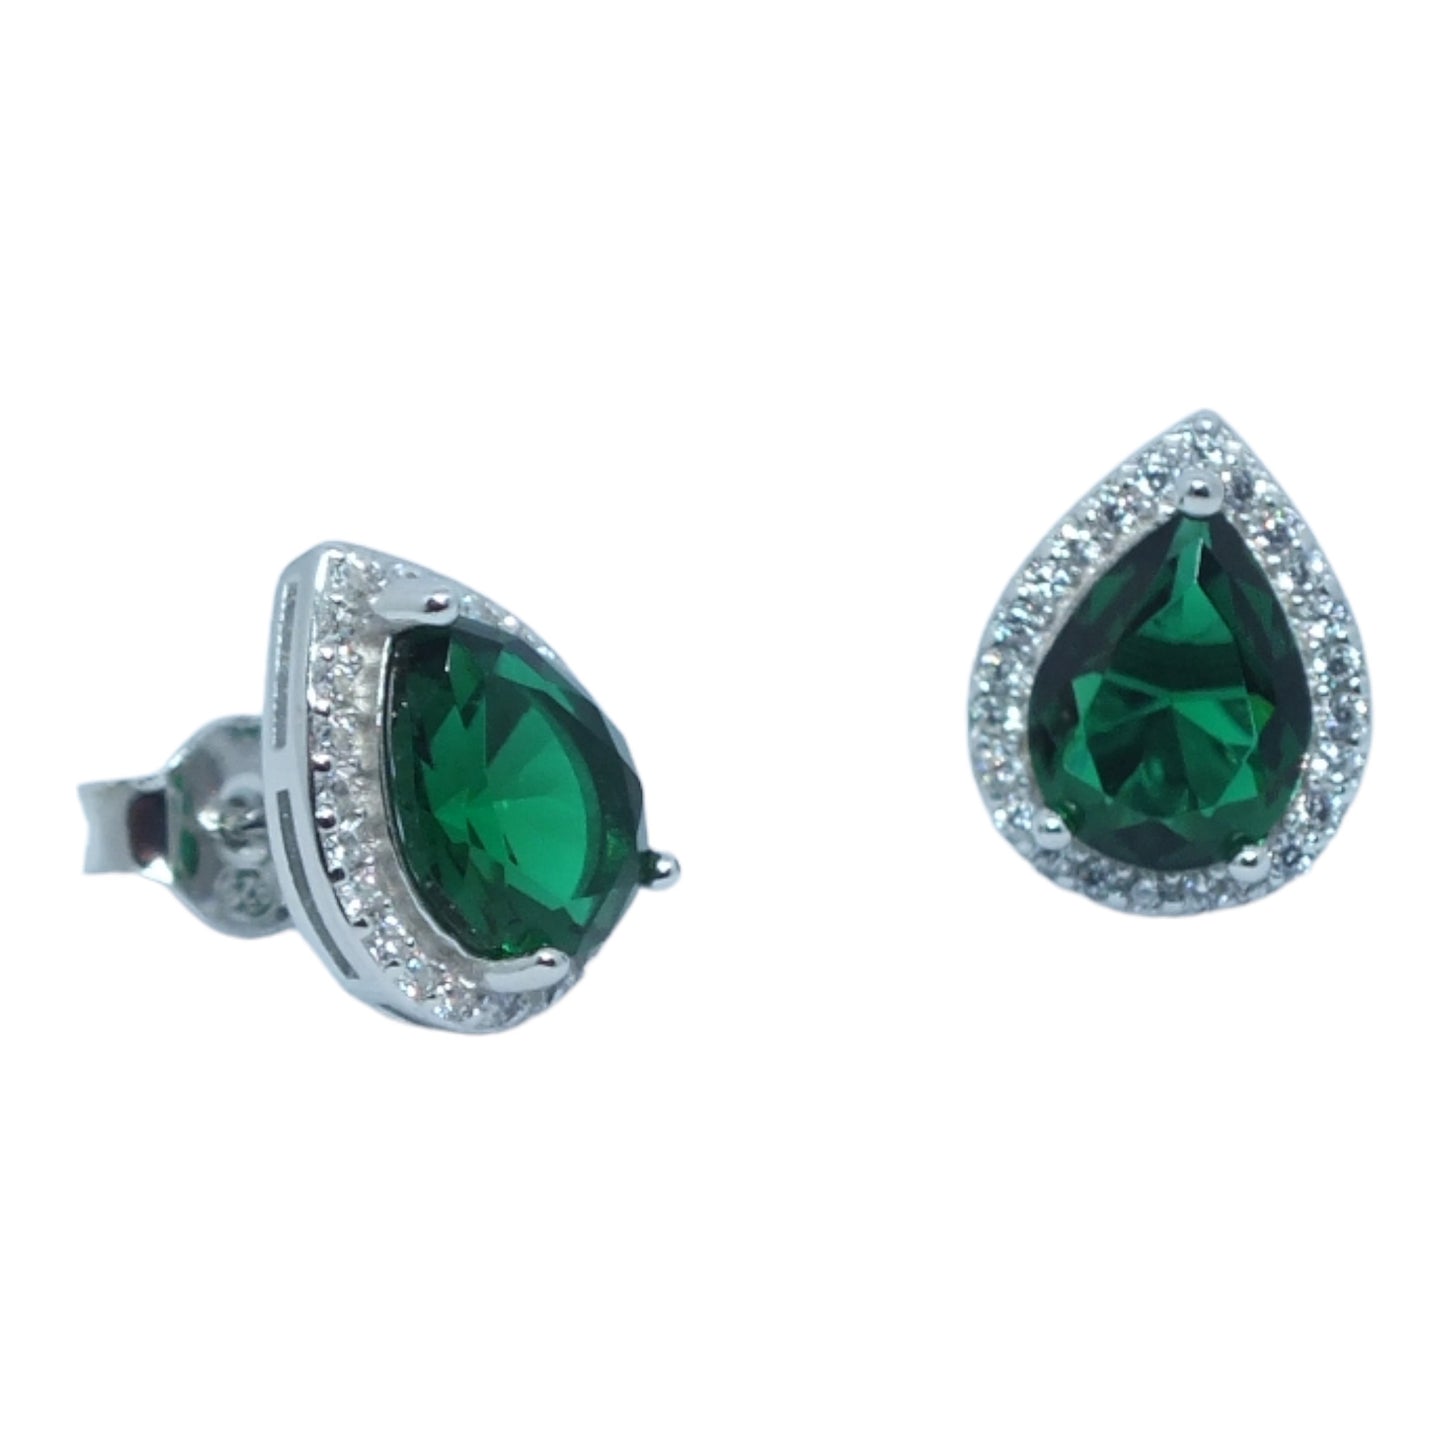 Green Stone Silver Necklace & Earrings Miniset- طقم فضة سلسال و حلق حجر اخضر